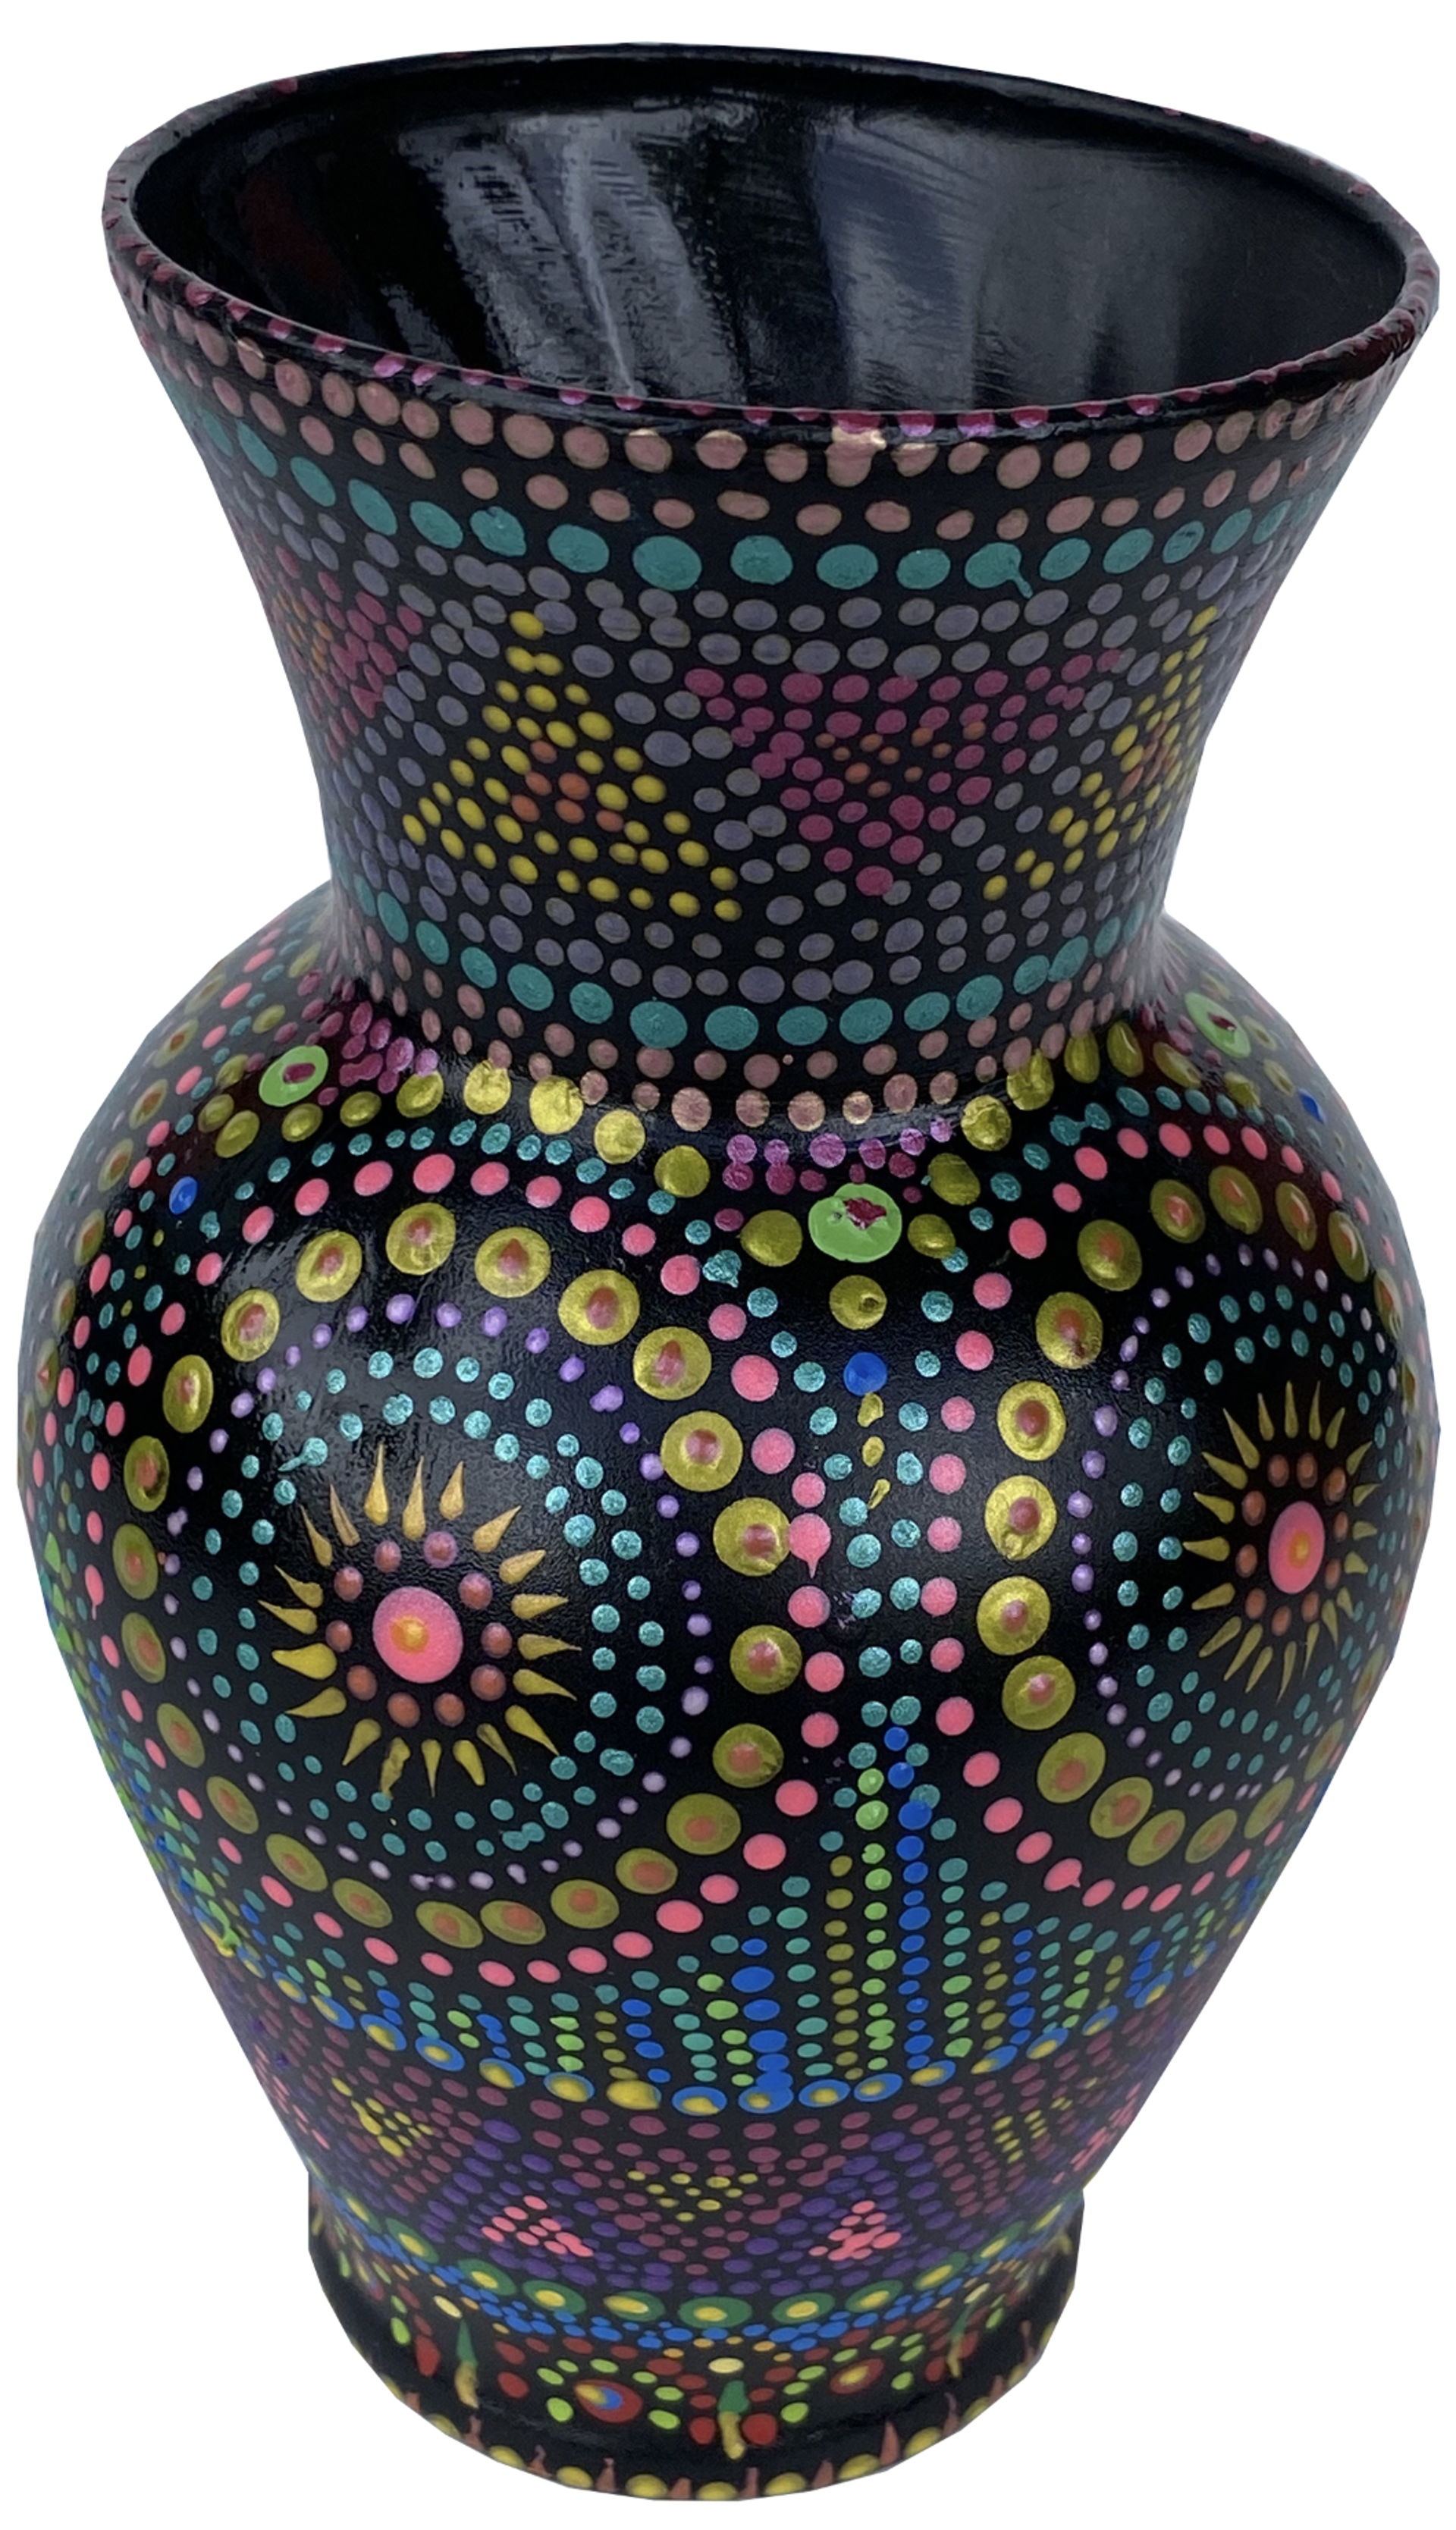 Vase by Carolyn Morgan Bauer